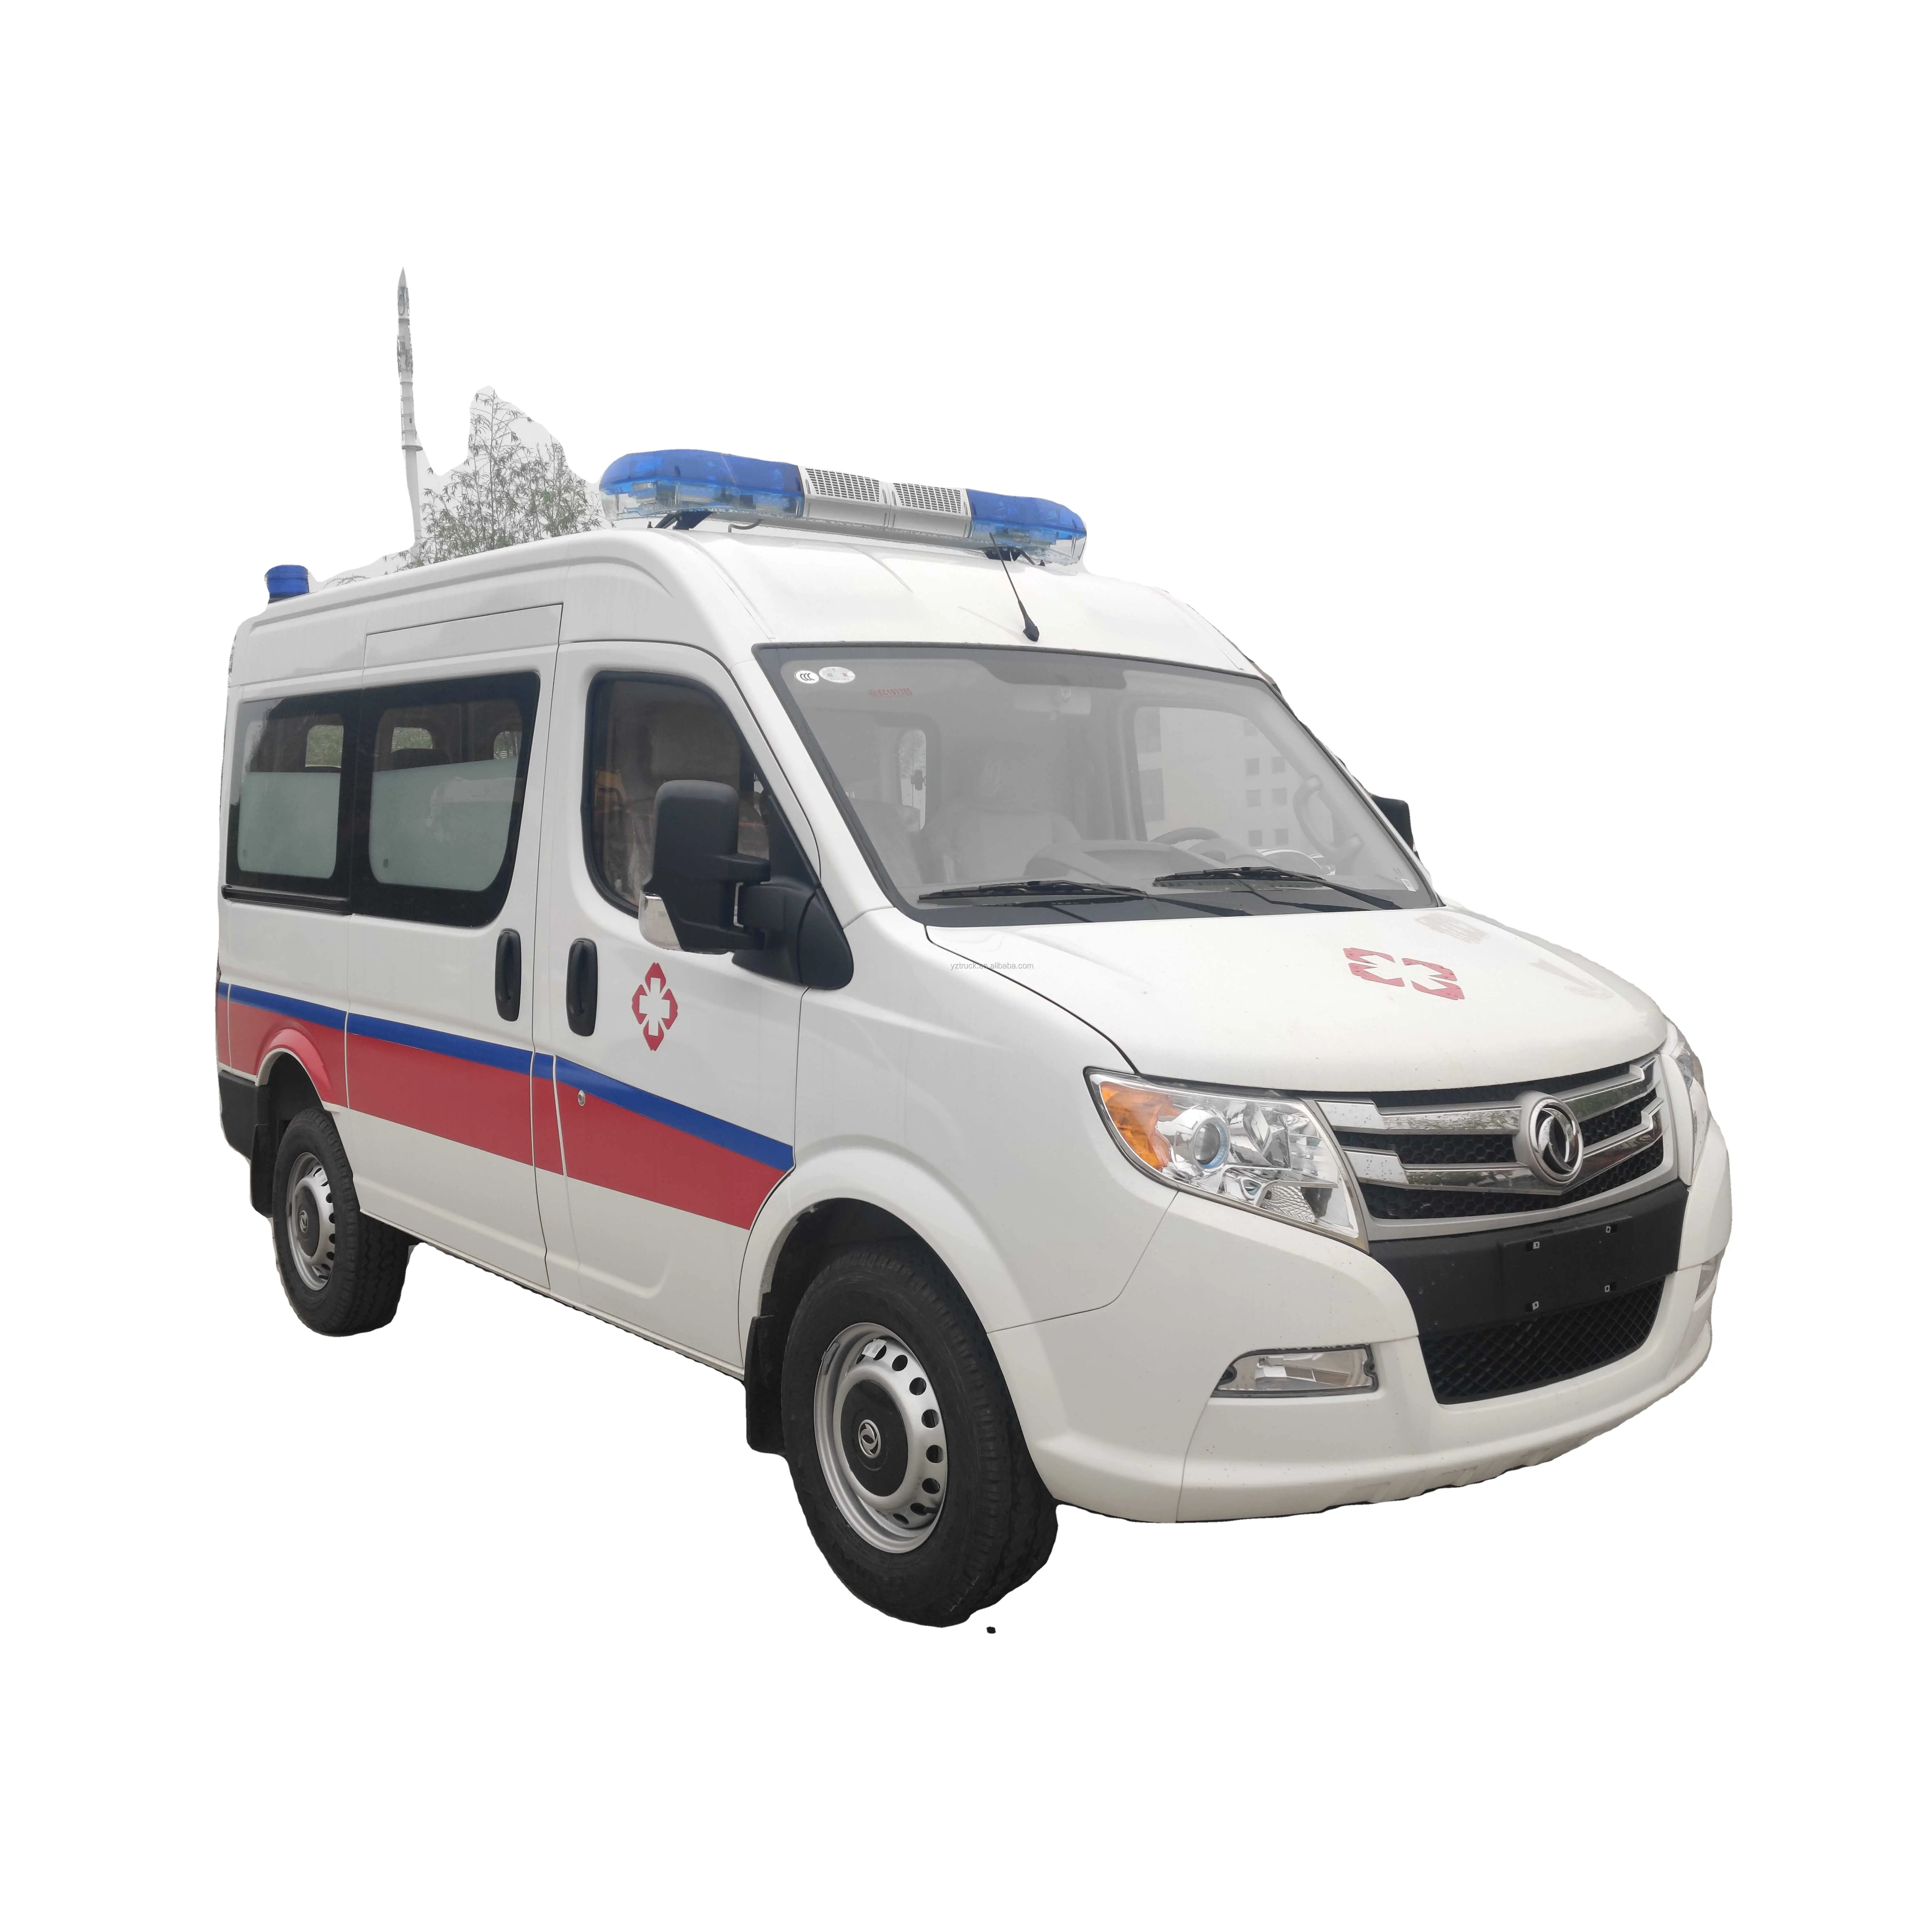 2021 Prijs Nieuwe Mobiele Ziekenhuis Icu Ambulance Voor Kritieke Zorg